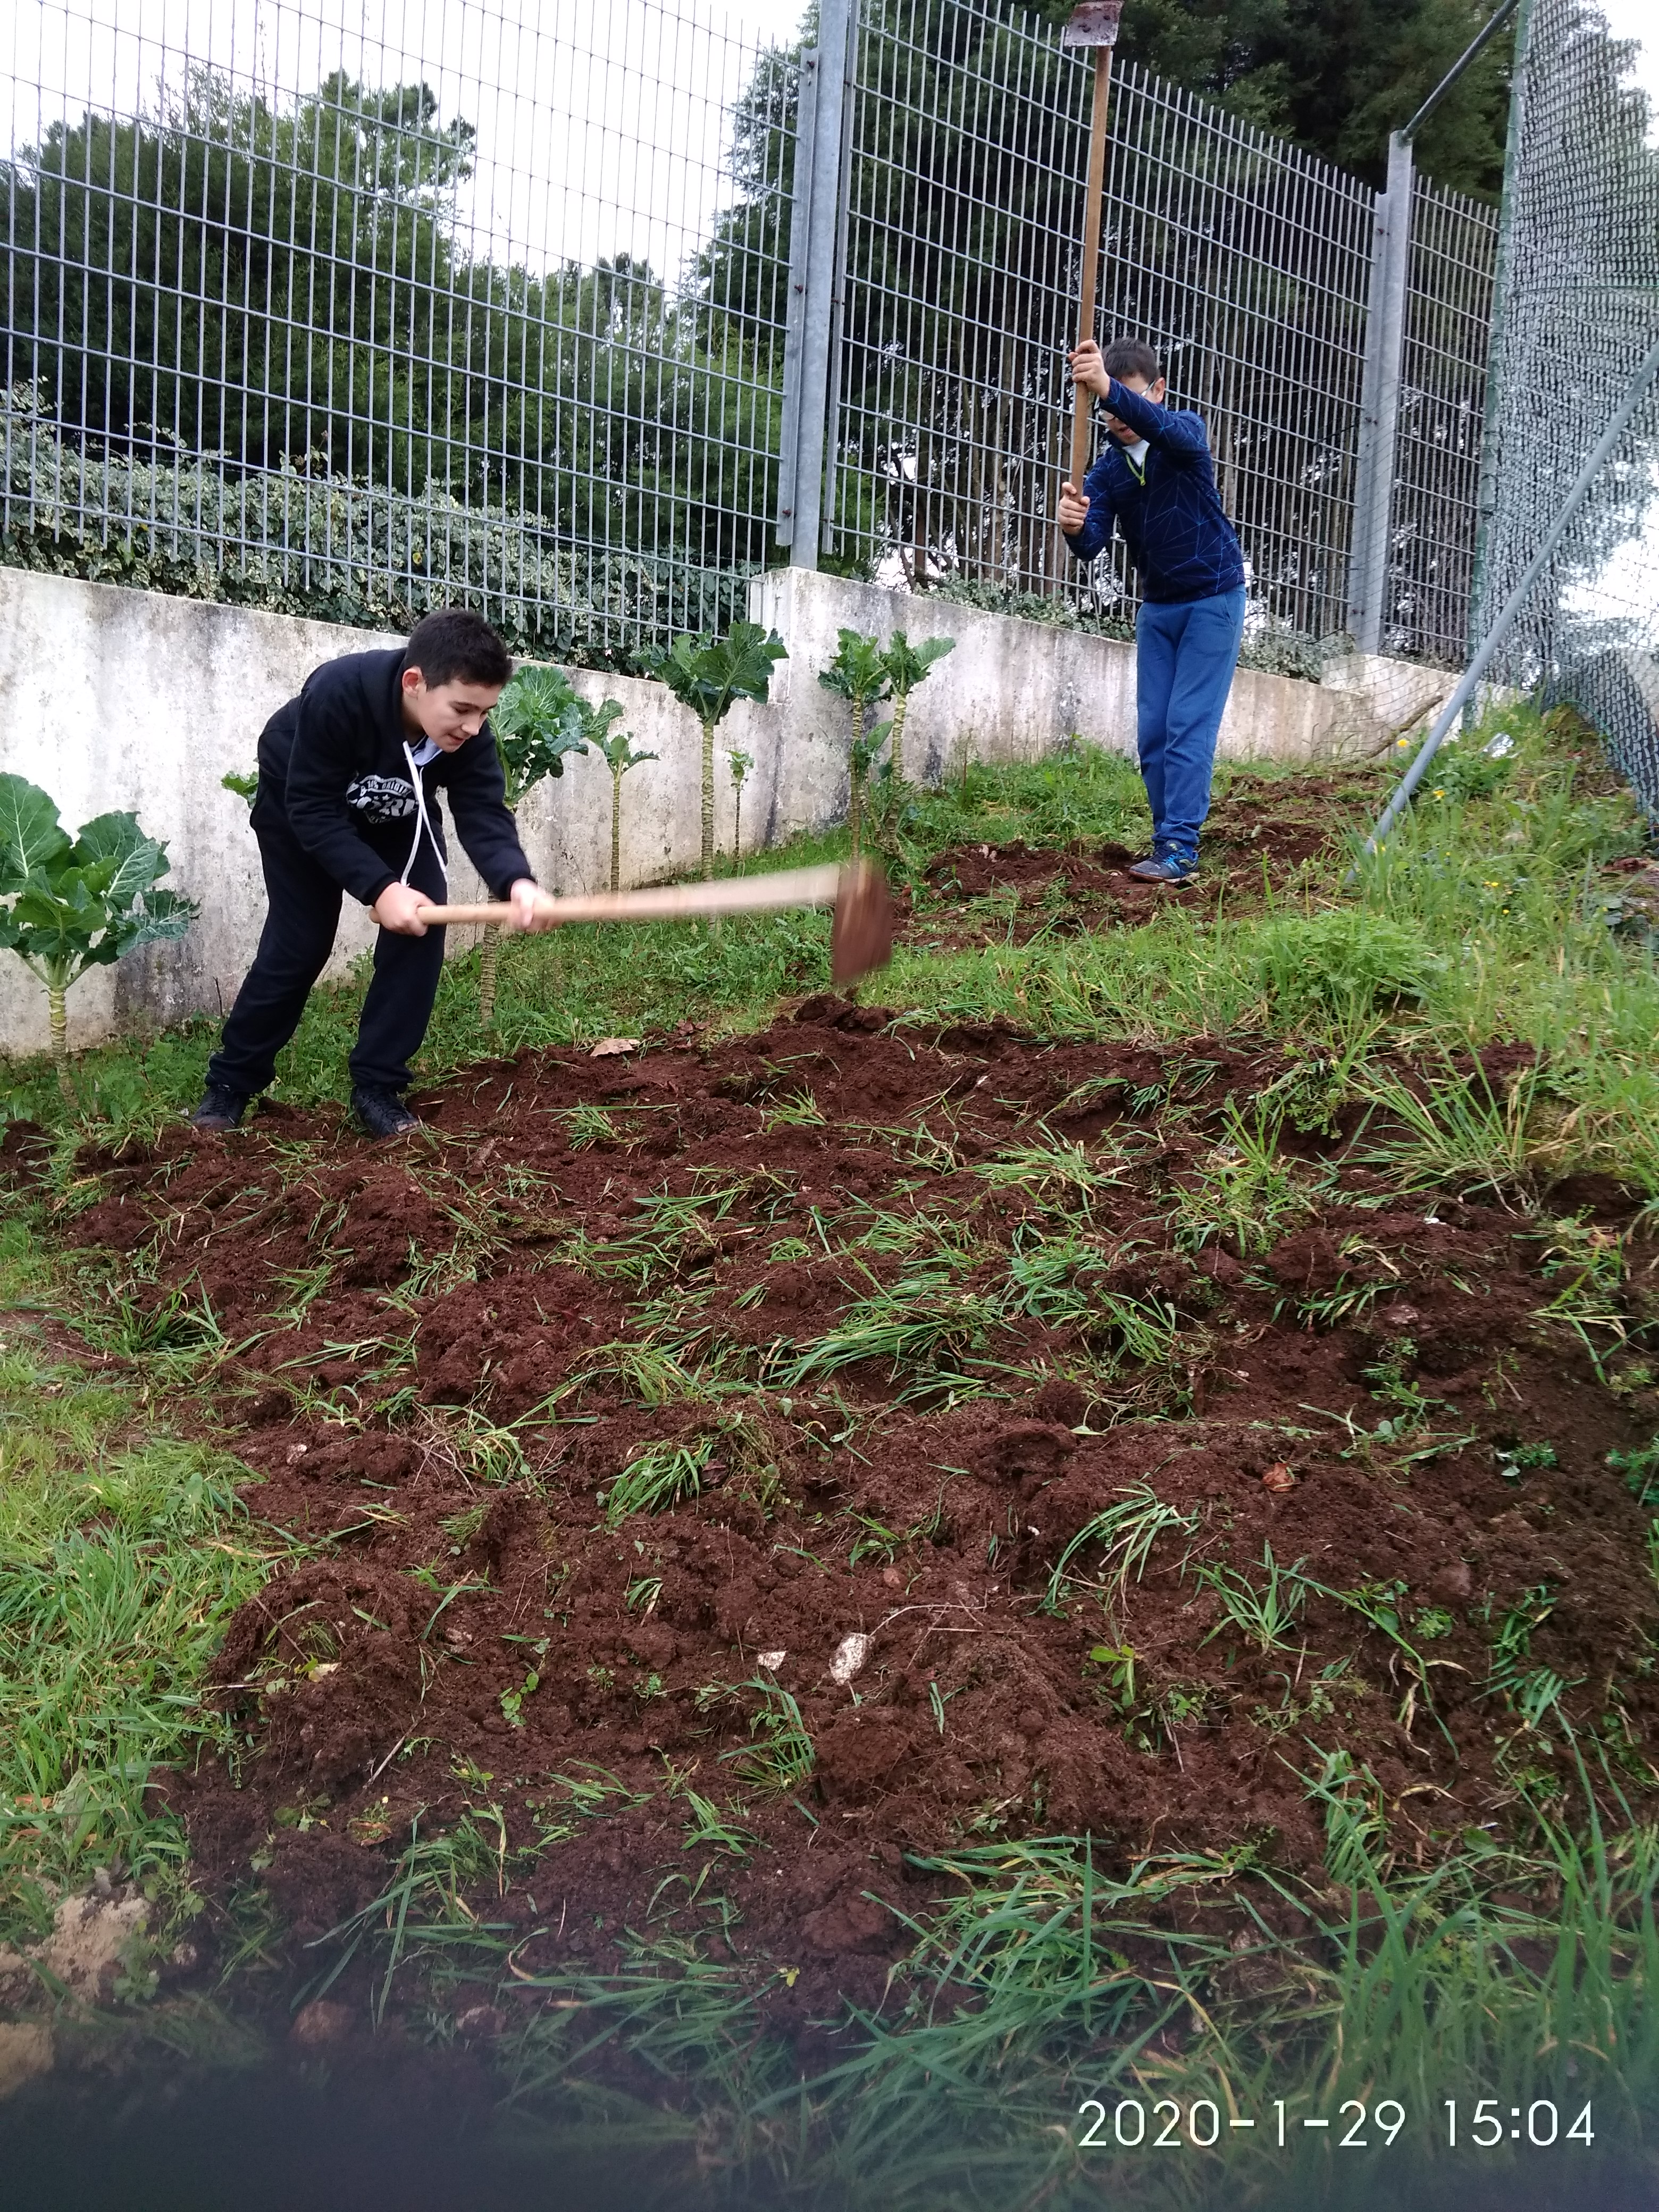 Preparação do terreno  por alunos do 2.º ciclo para a cultura de rúcula e ervas aromáticas.